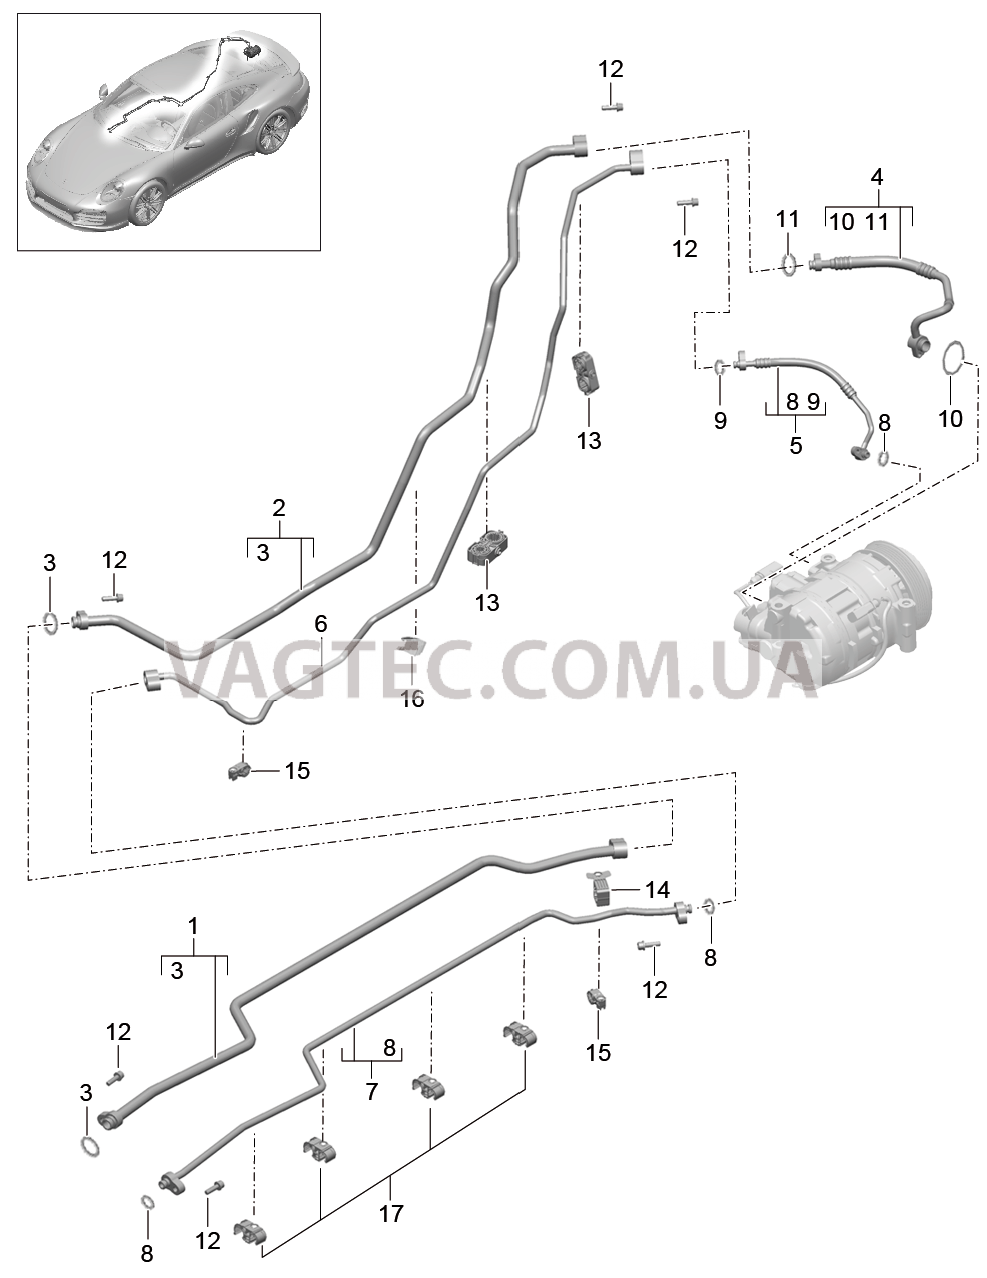 813-025 Циркуляция охлаждающей жидкости, Днище кузова, и, Задняя подвеска для PORSCHE Porsche991Turbo 2014-2017USA